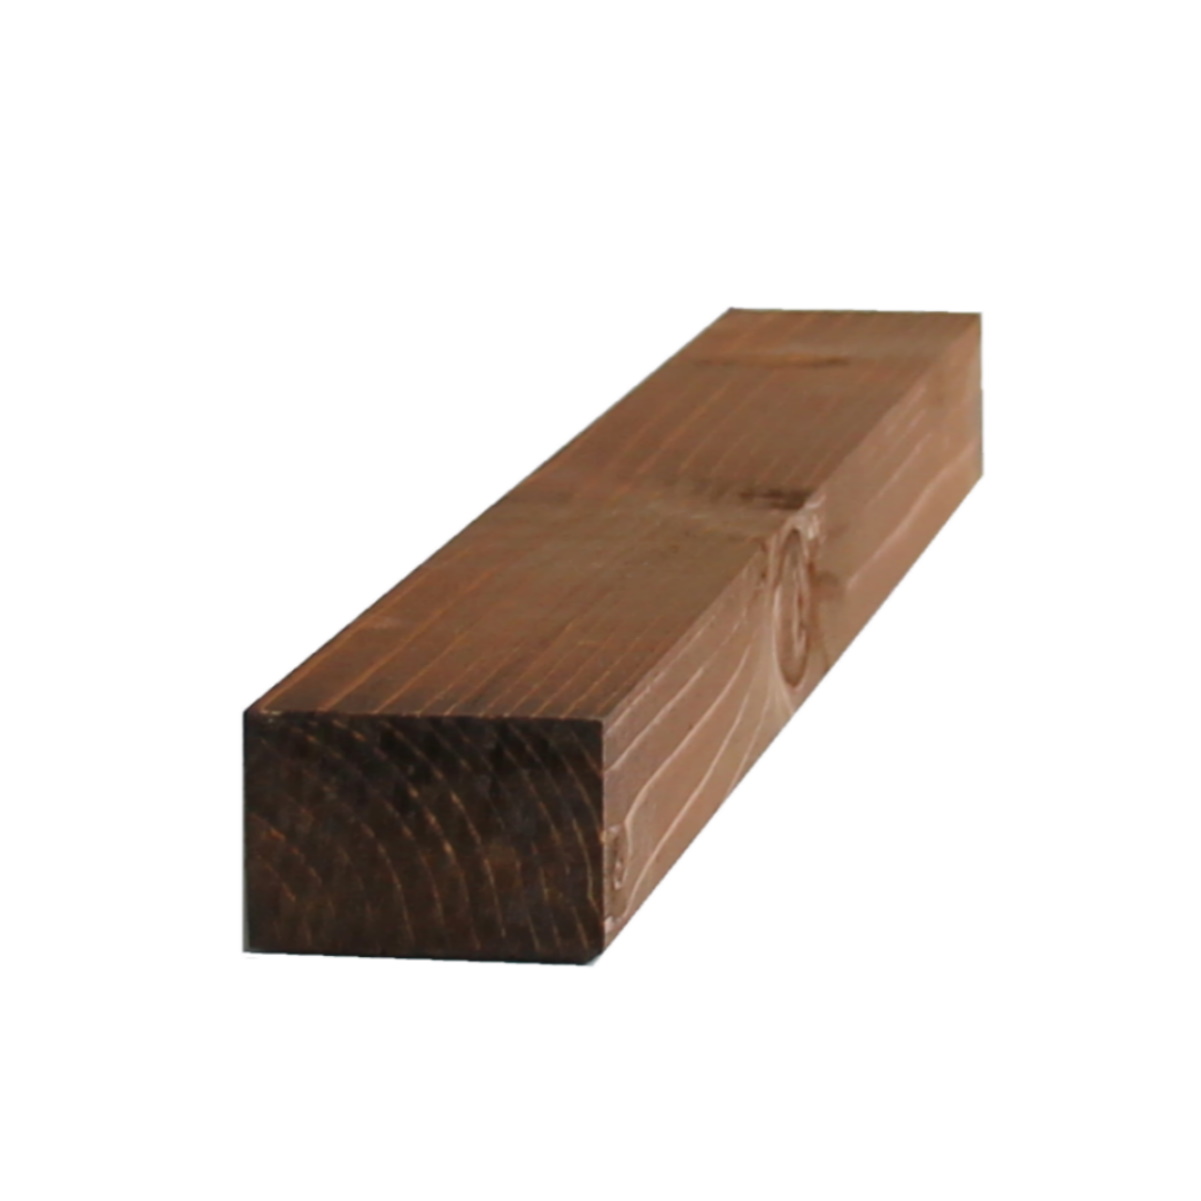 Il nuovo negozio online per legno su misura - Listello Abete piallato noce scuro